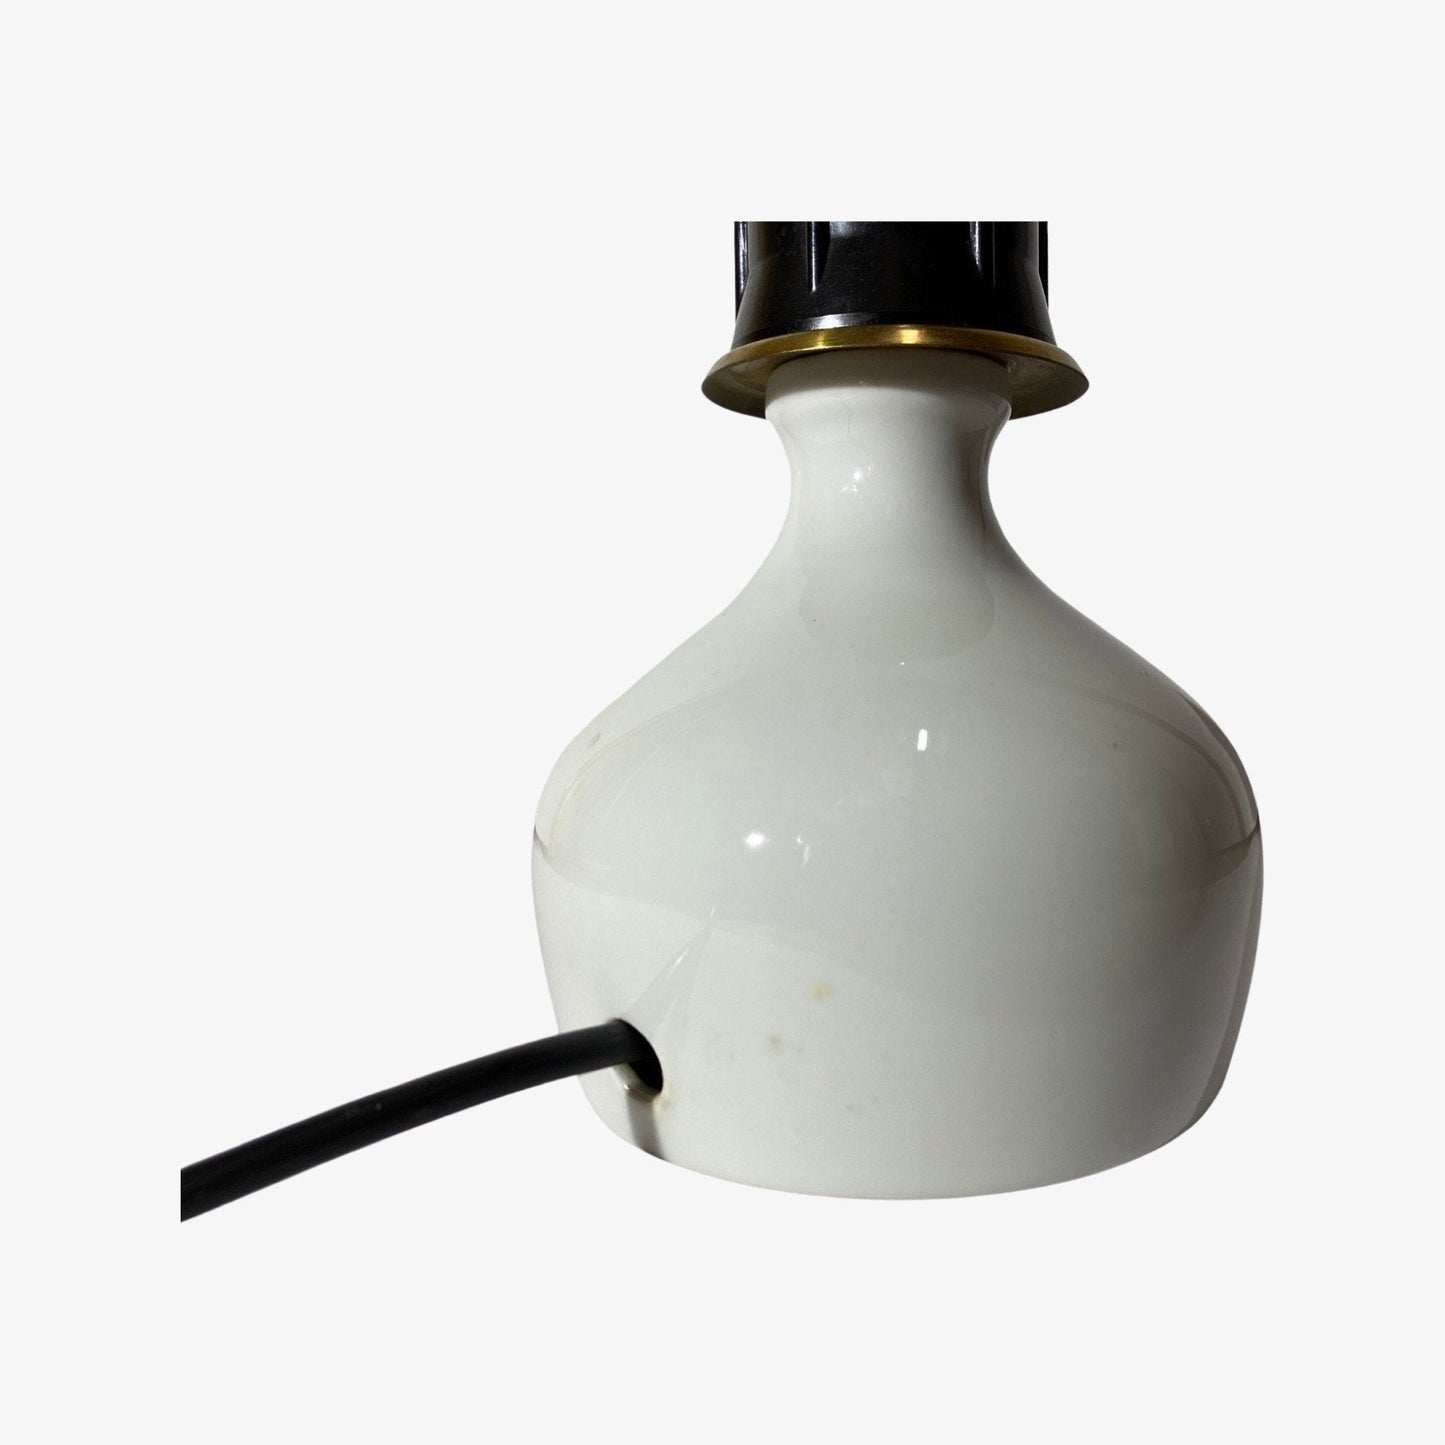 60s Handmade Ceramic Lamp From Denmark | White Ceramic Vintage Pottery - Mid Century Modern Lighting - VIntage Table Light - Retro Desk Lamp - FancyVintage.nl -